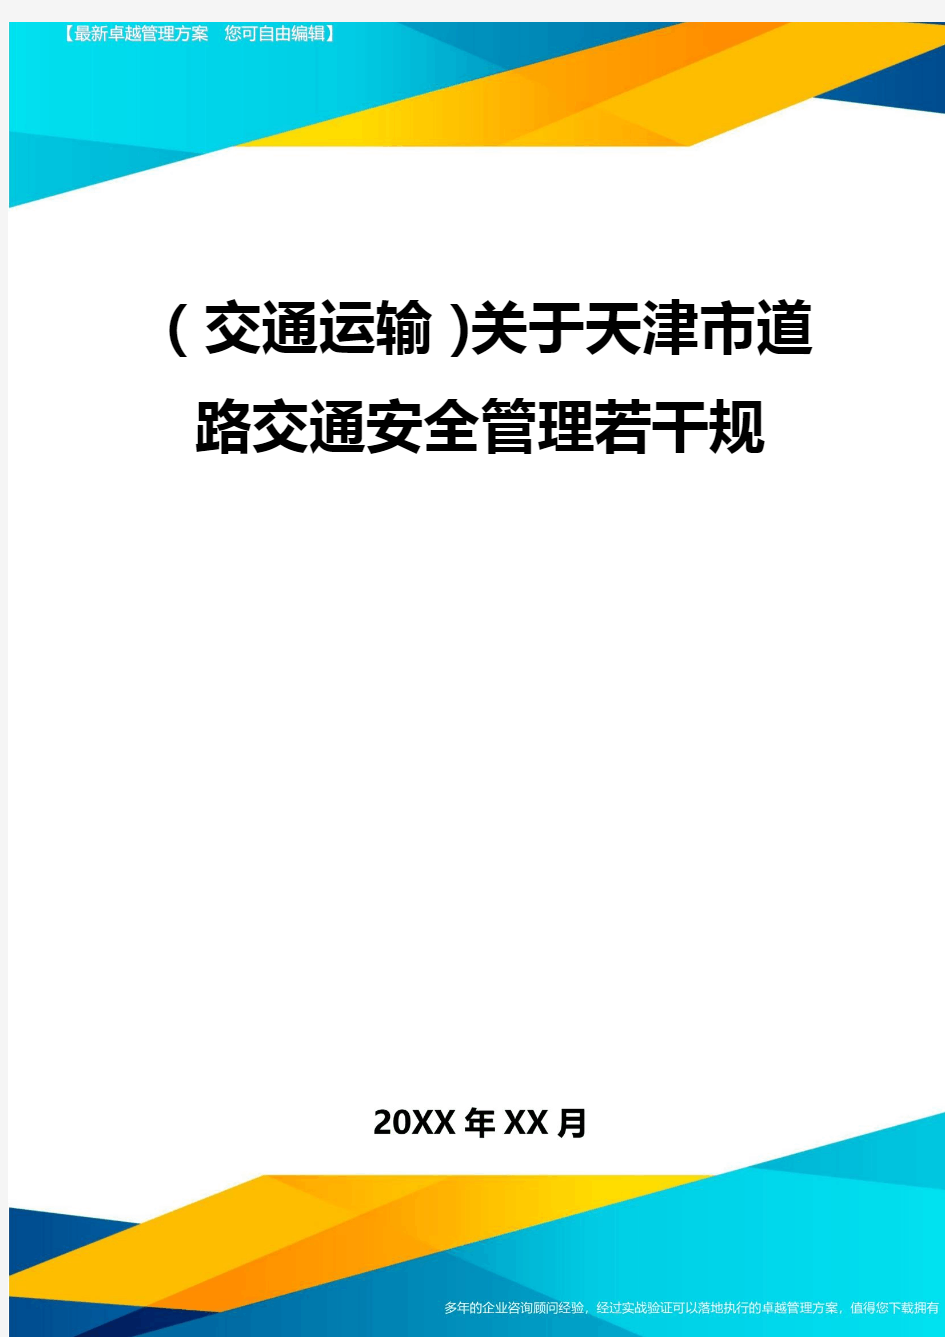 (2020年)(交通运输)关于天津市道路交通安全管理若干规精编